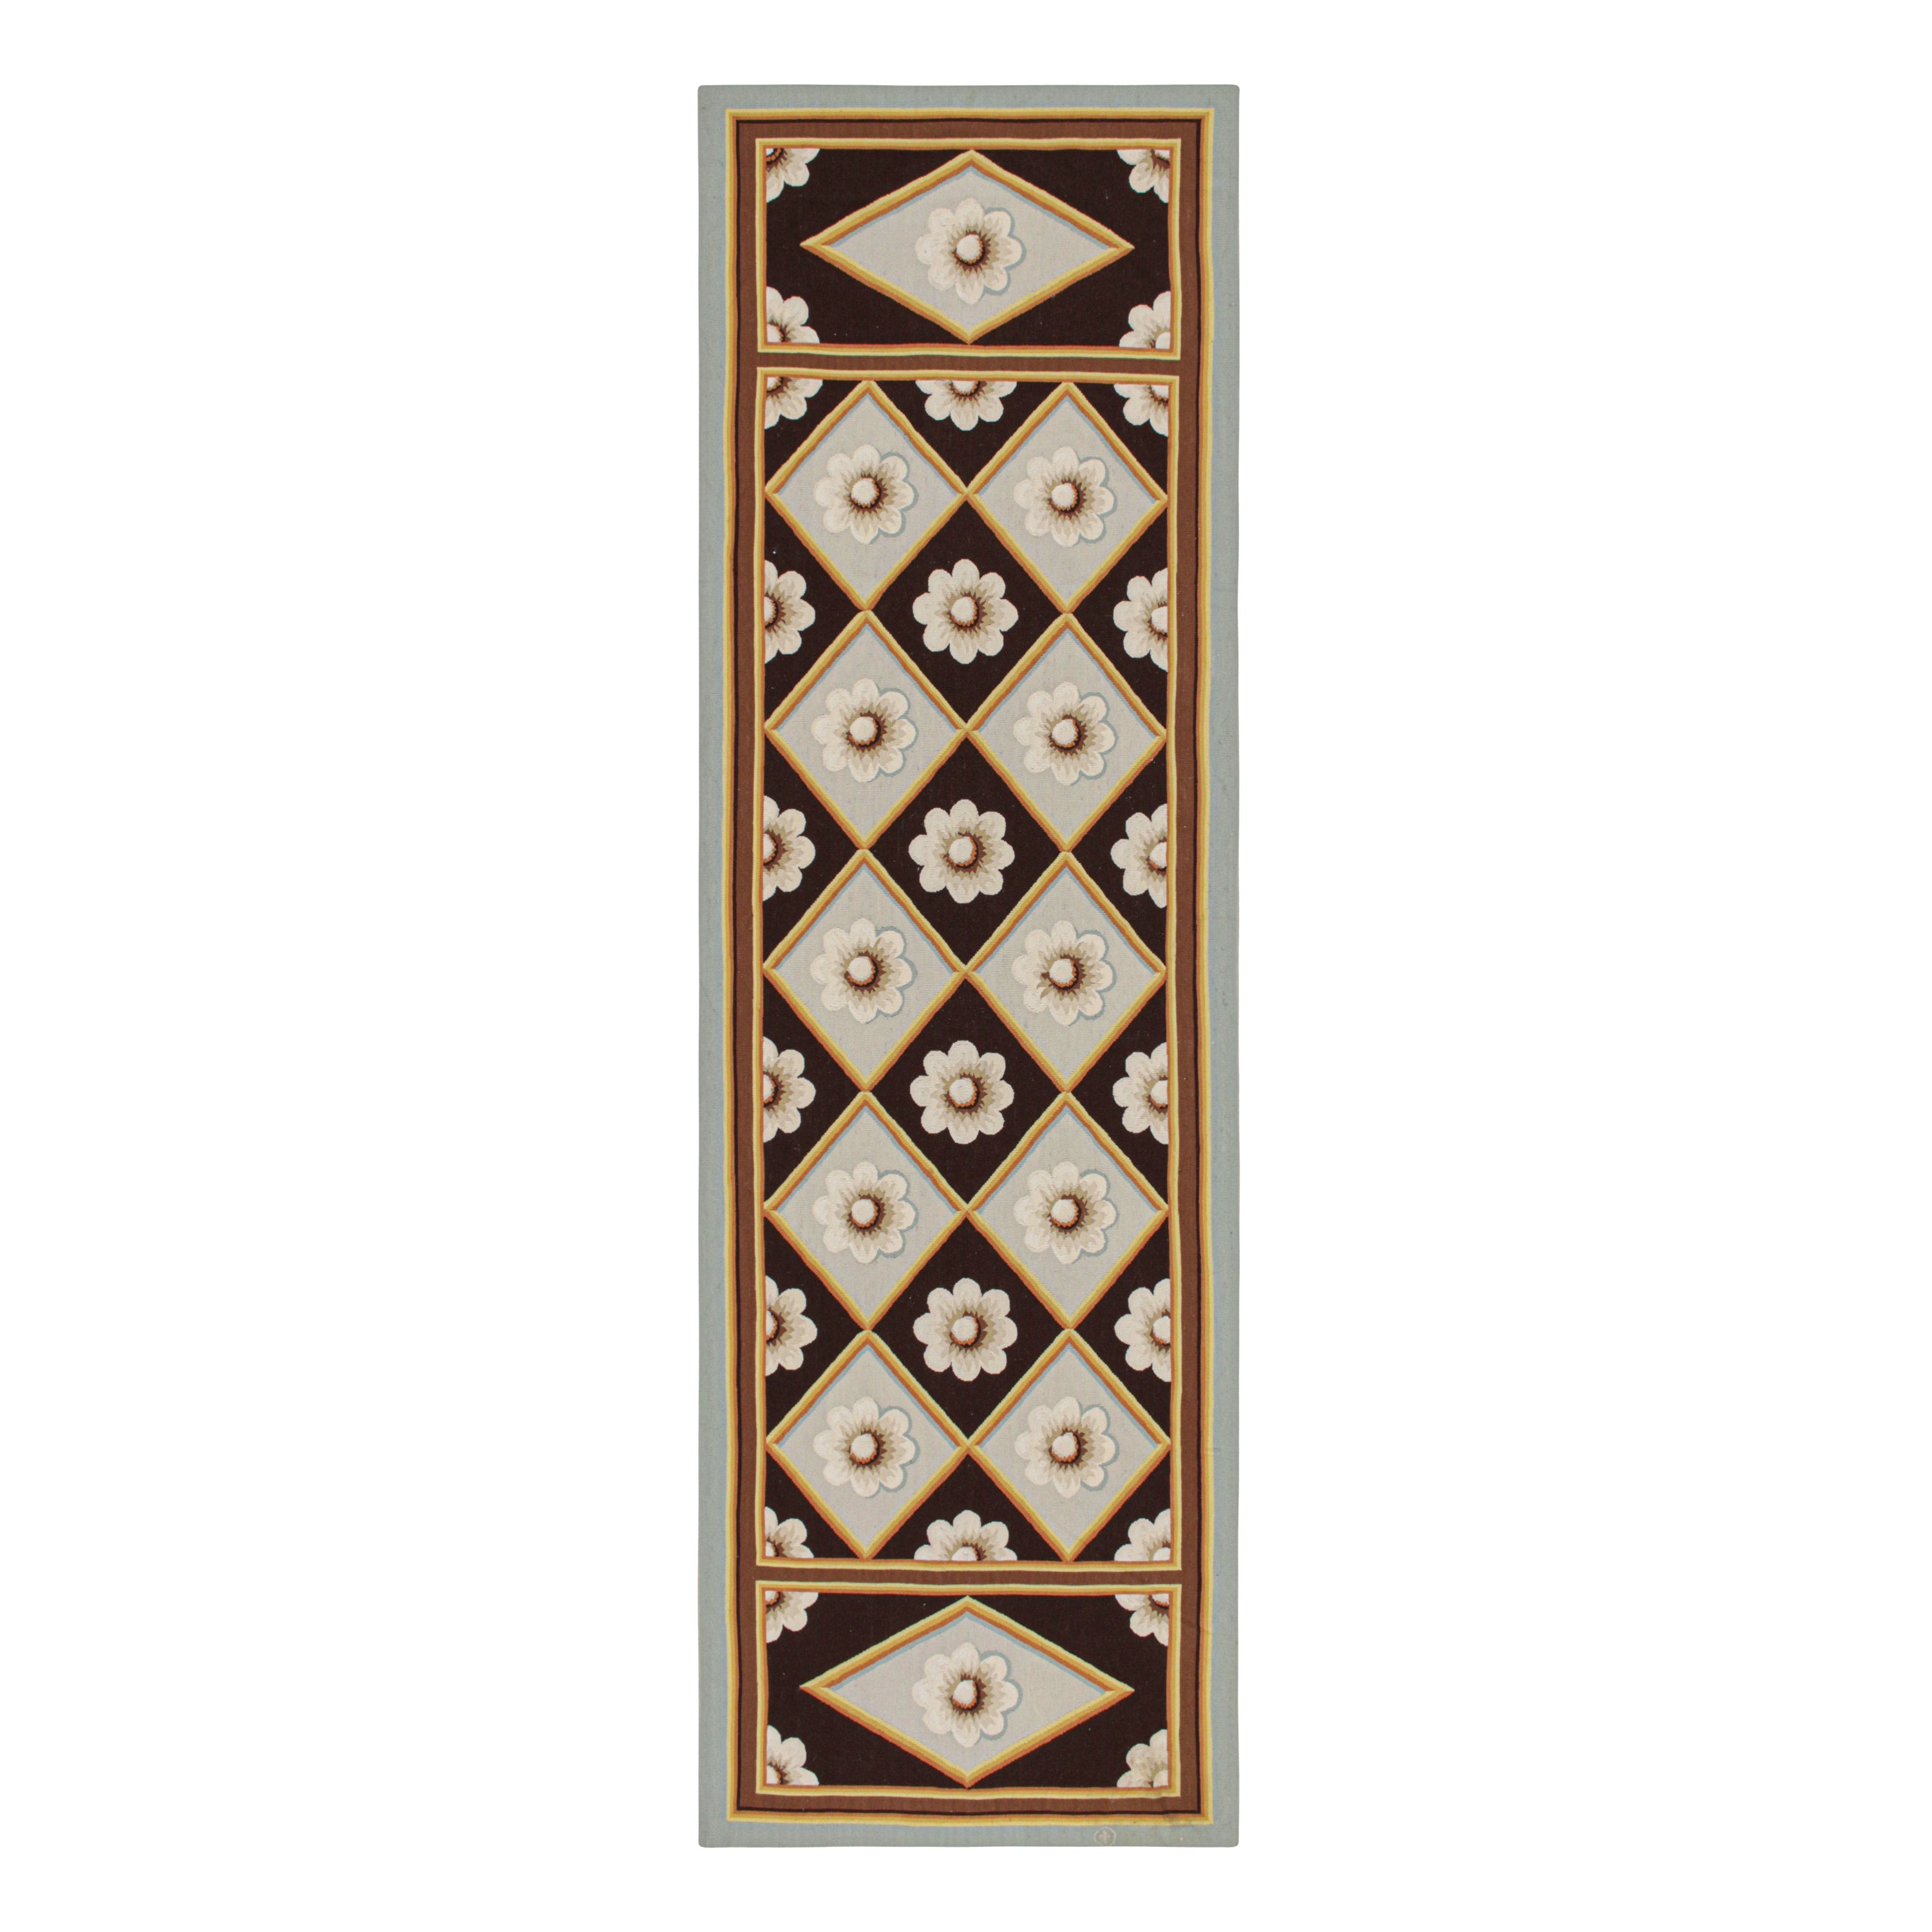 Teppich & Kelim im Aubusson-Stil aus dem 18. Jahrhundert mit braunen und weißen Blumenmustern im Angebot